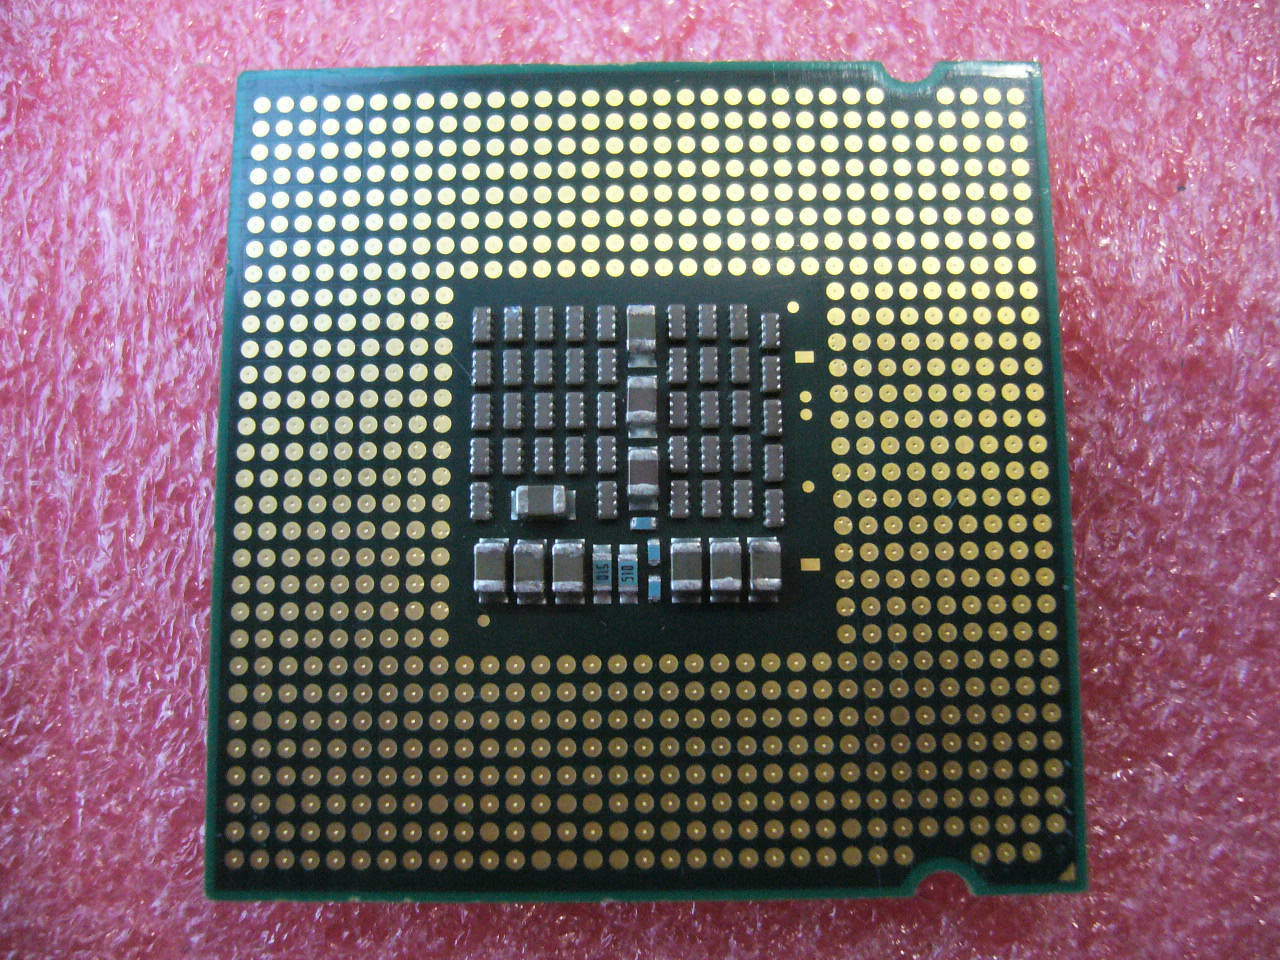 QTY 1x INTEL Quad Cores X3210 CPU 2.13GHz/8MB/1066Mhz LGA775 SLACU - Click Image to Close